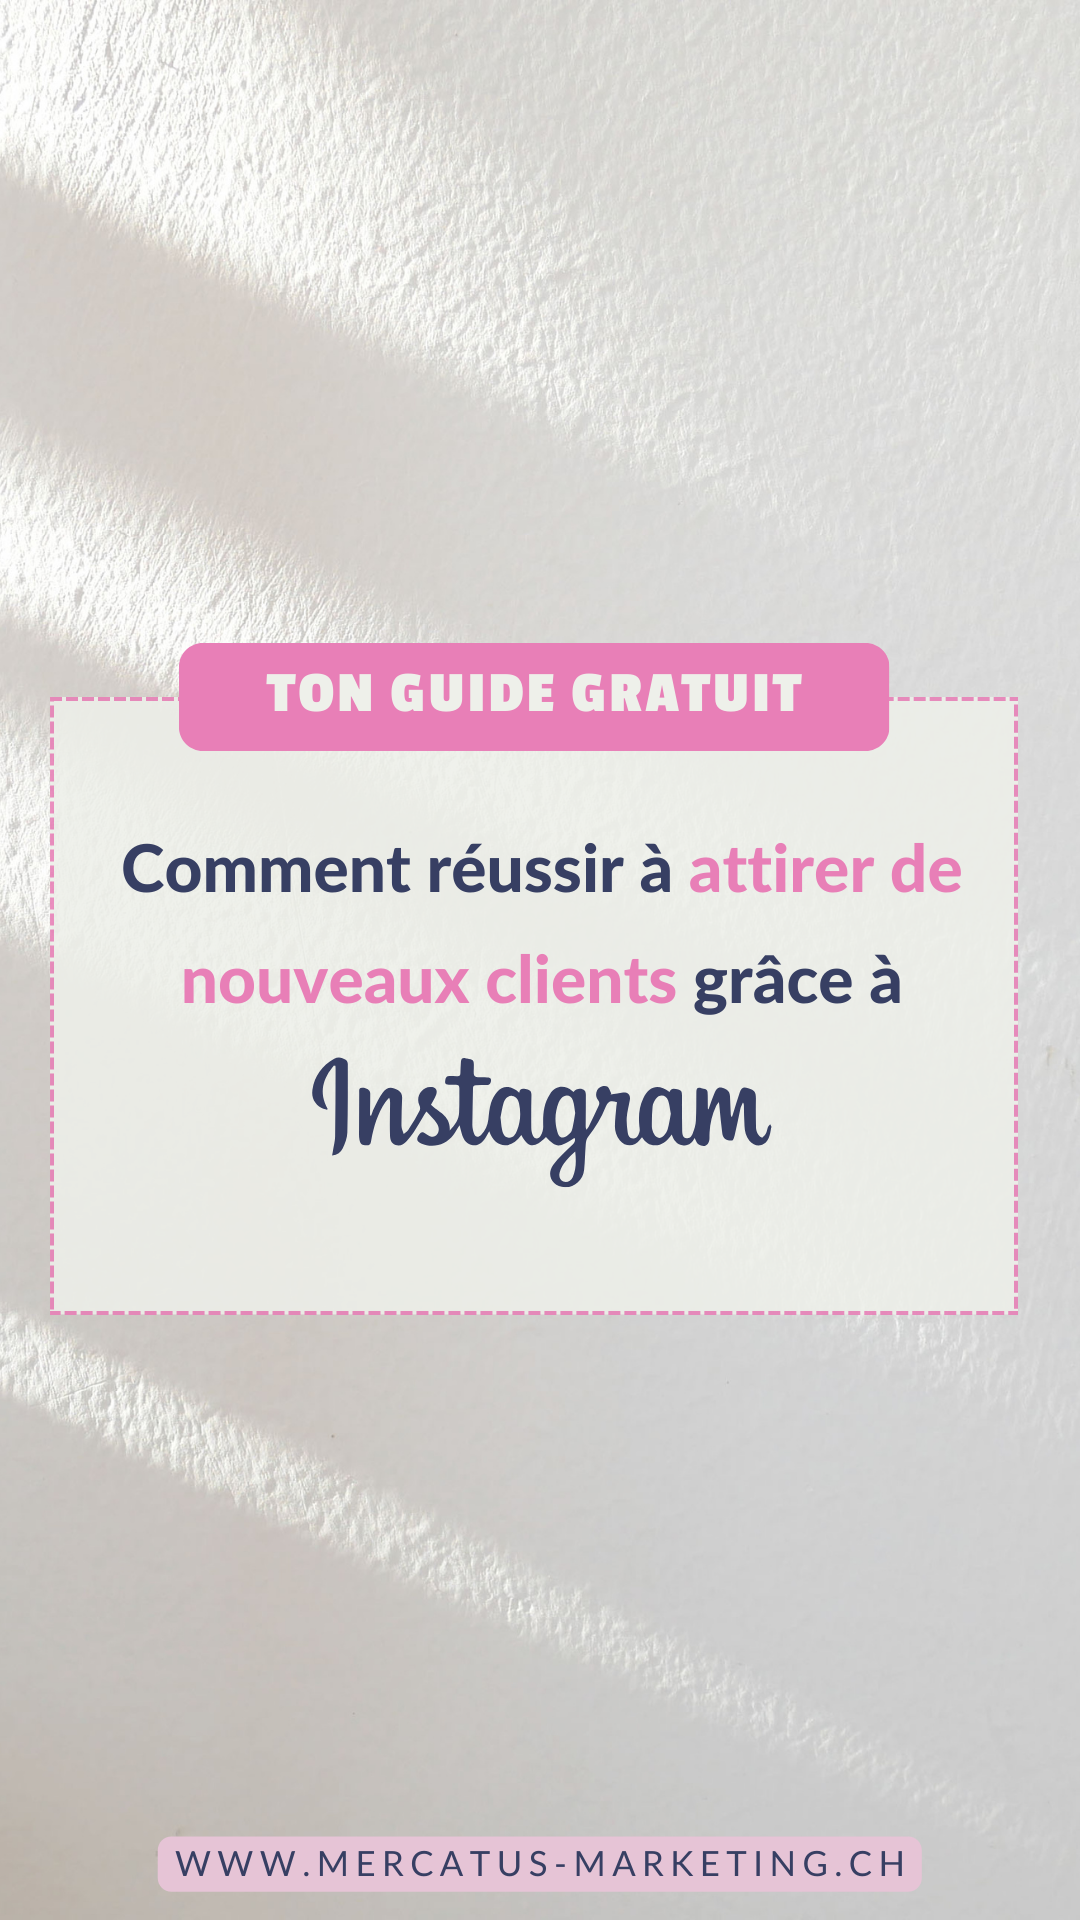 Guide Instagram gratuit pour attirer de nouveaux clients